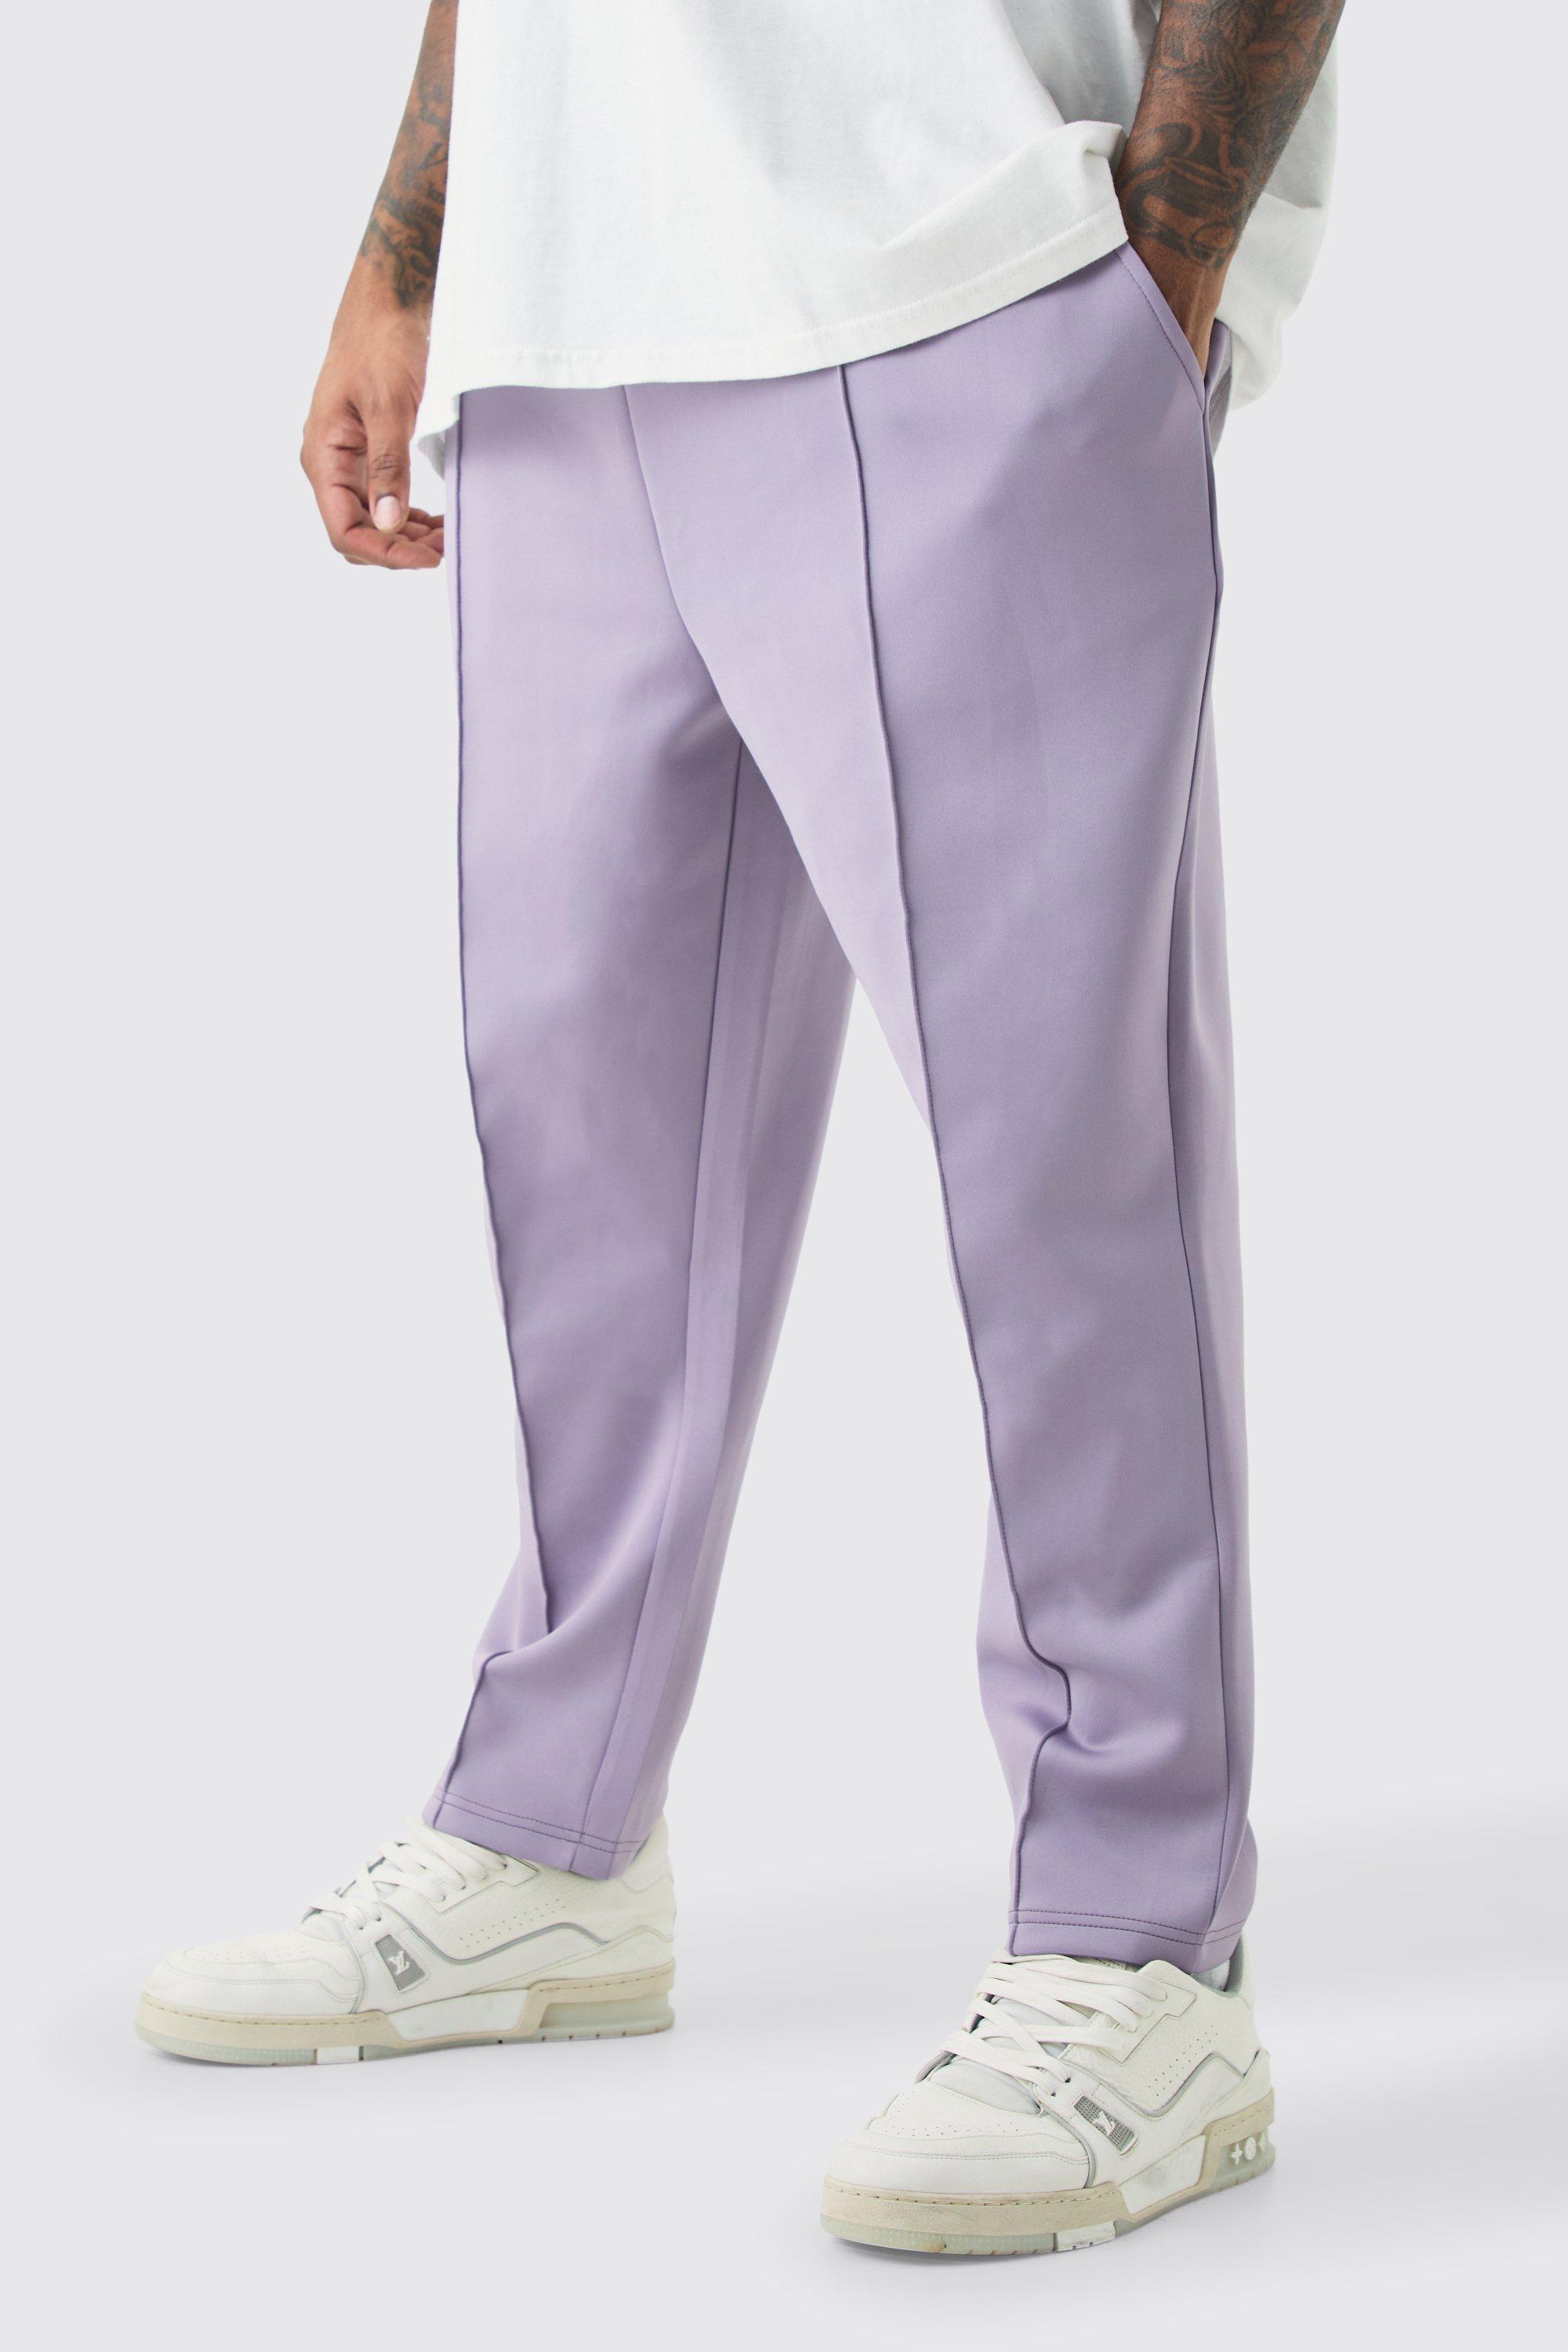 Image of Pantaloni tuta Plus Size affusolati alla caviglia in Scuba, Purple